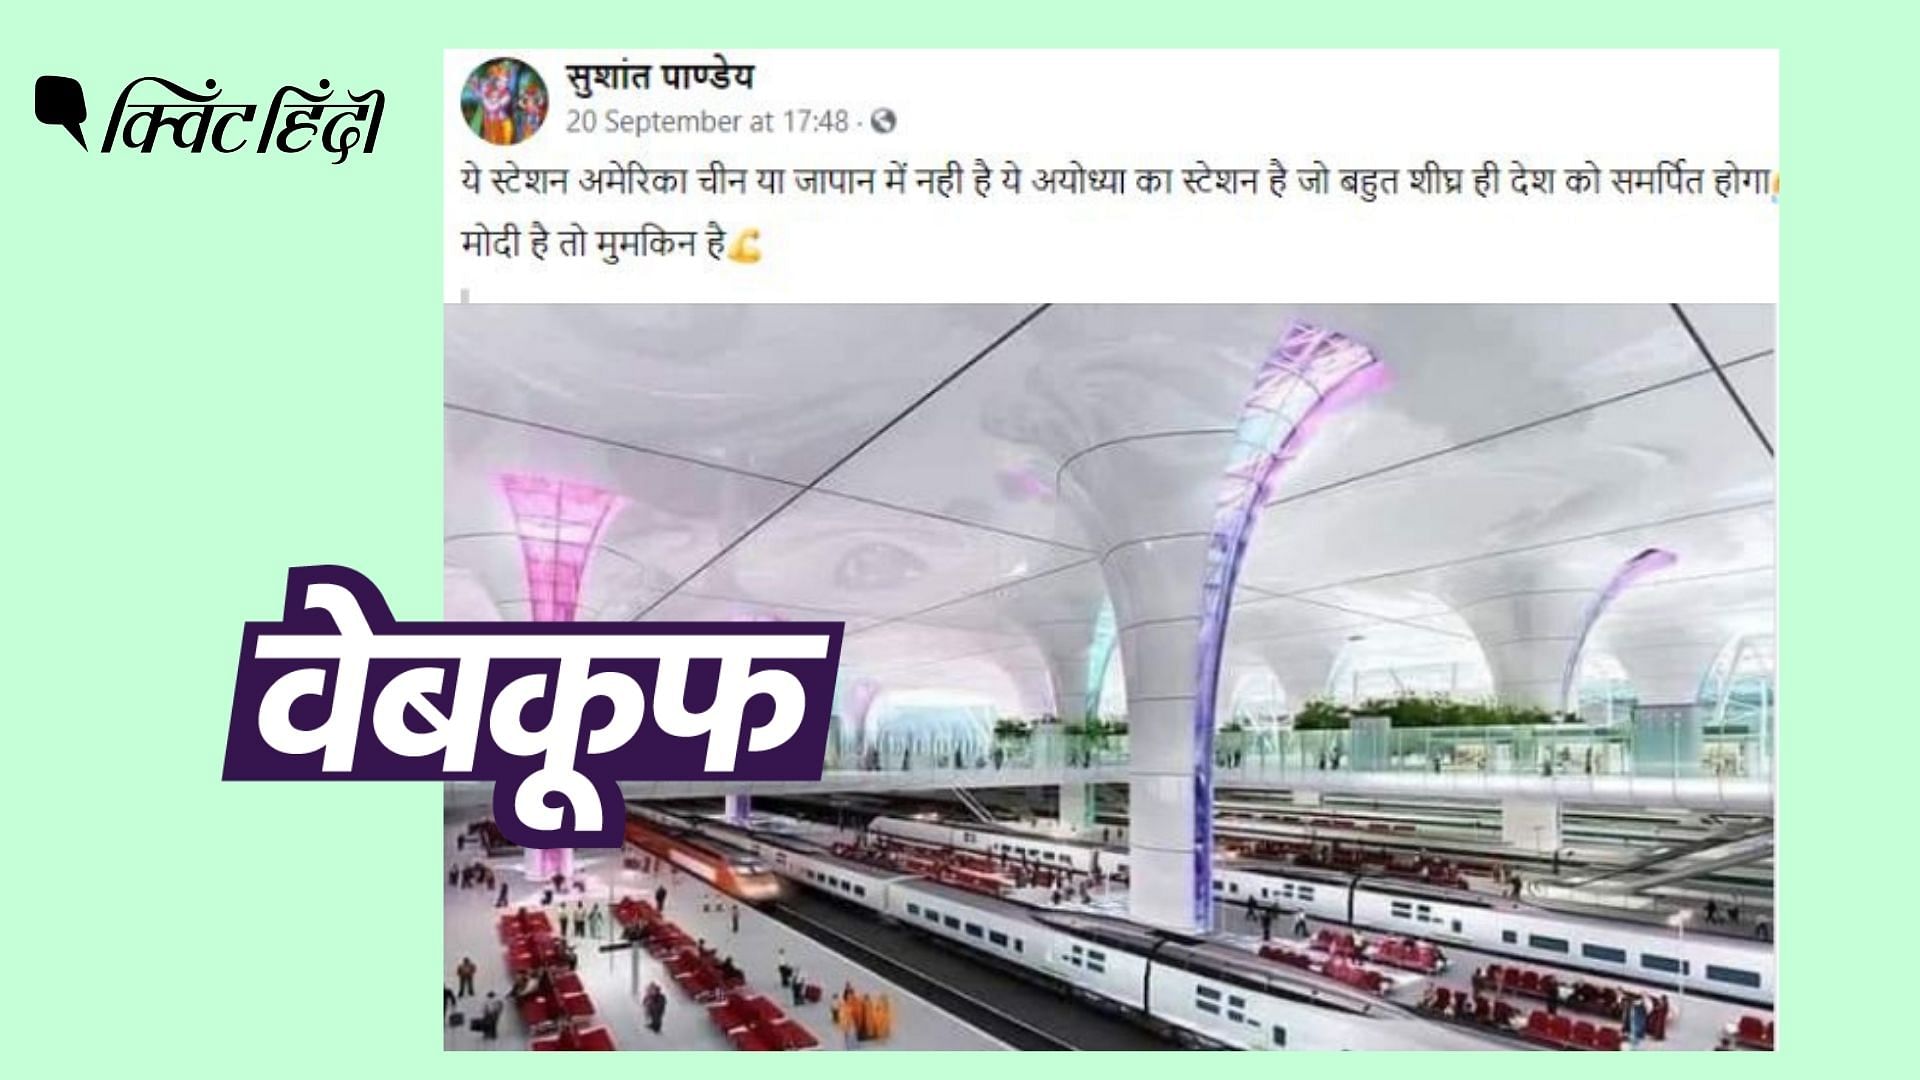 <div class="paragraphs"><p>अयोध्या में प्रस्तावित रेलवे स्टेशन का वीडियो, वायरल फोटो से बहुत अलग है.</p></div>